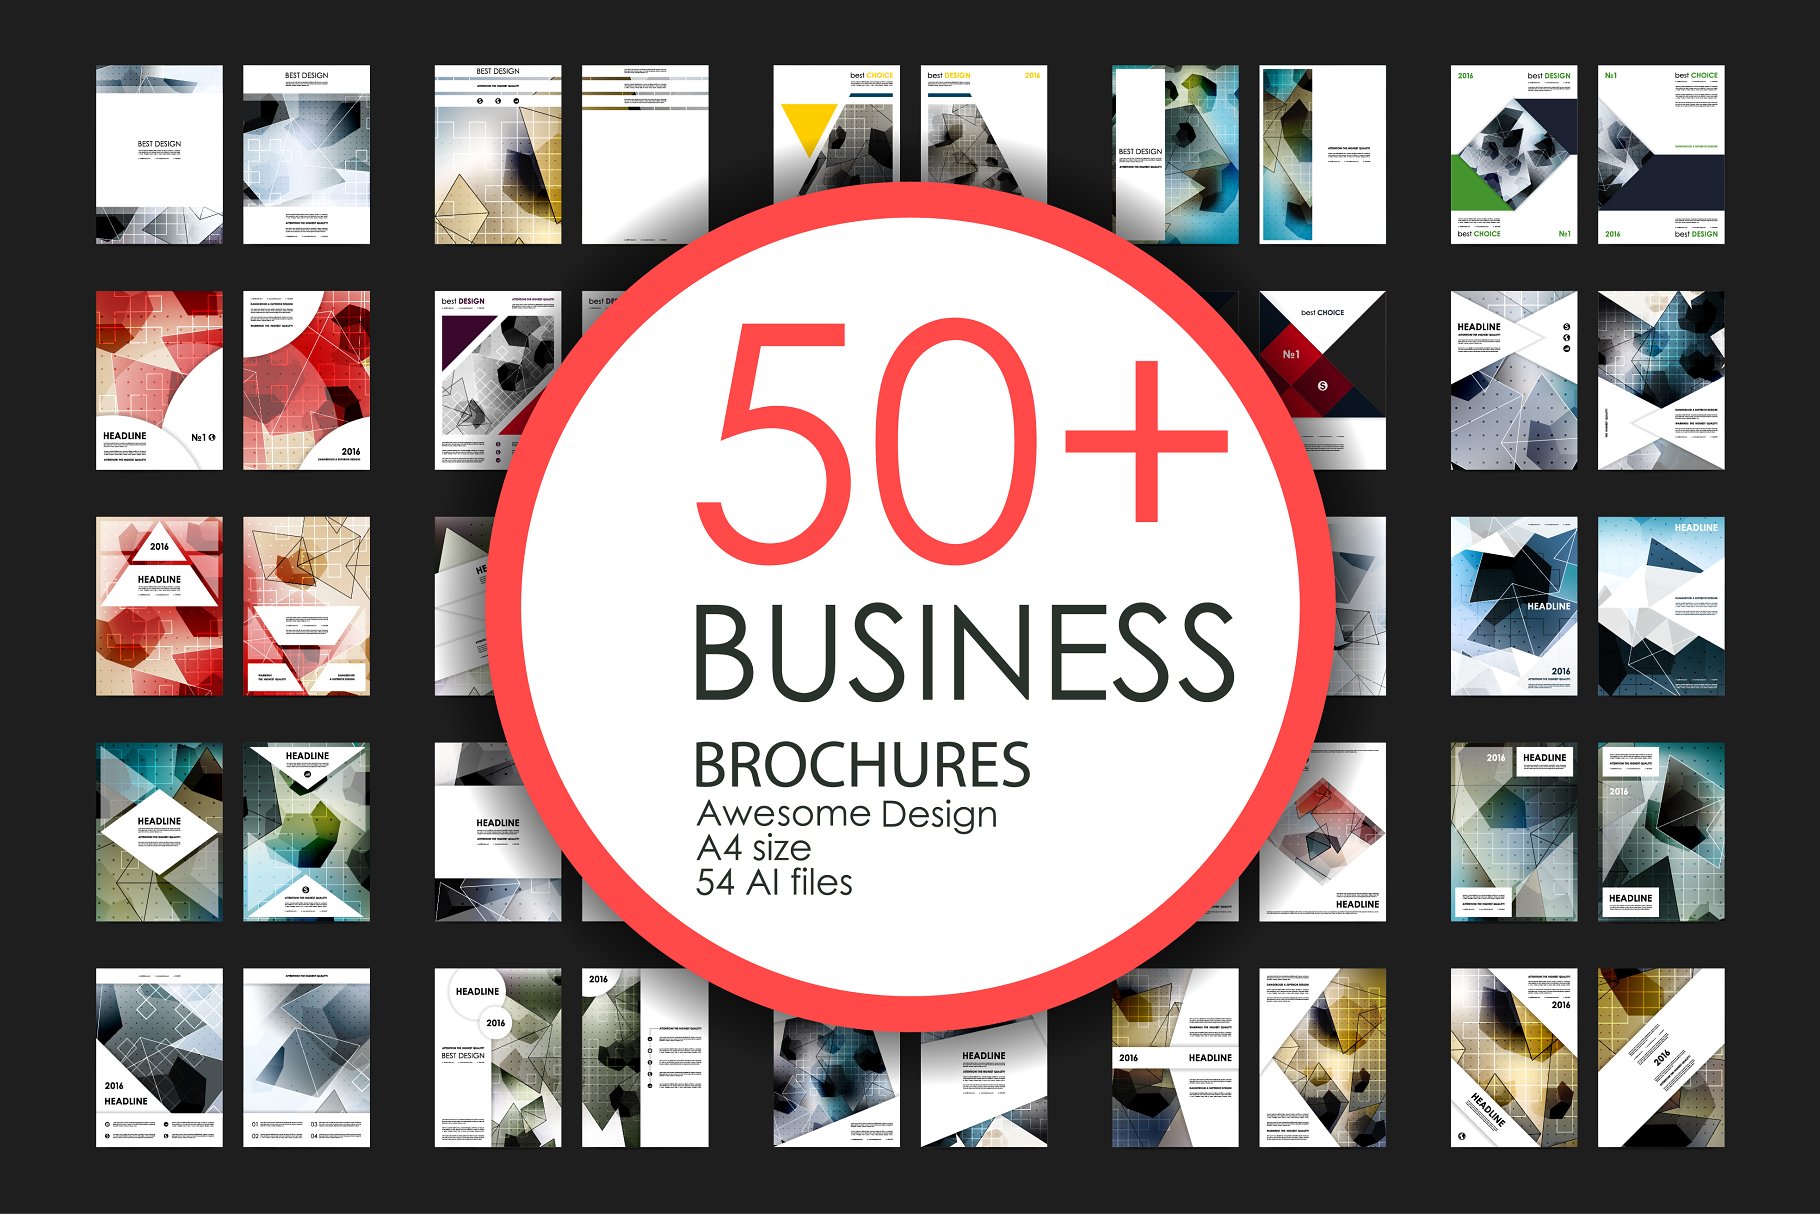 极力推荐：50+企业商业介绍宣传小册子模板 50+ Business Brochures Bundle插图(55)